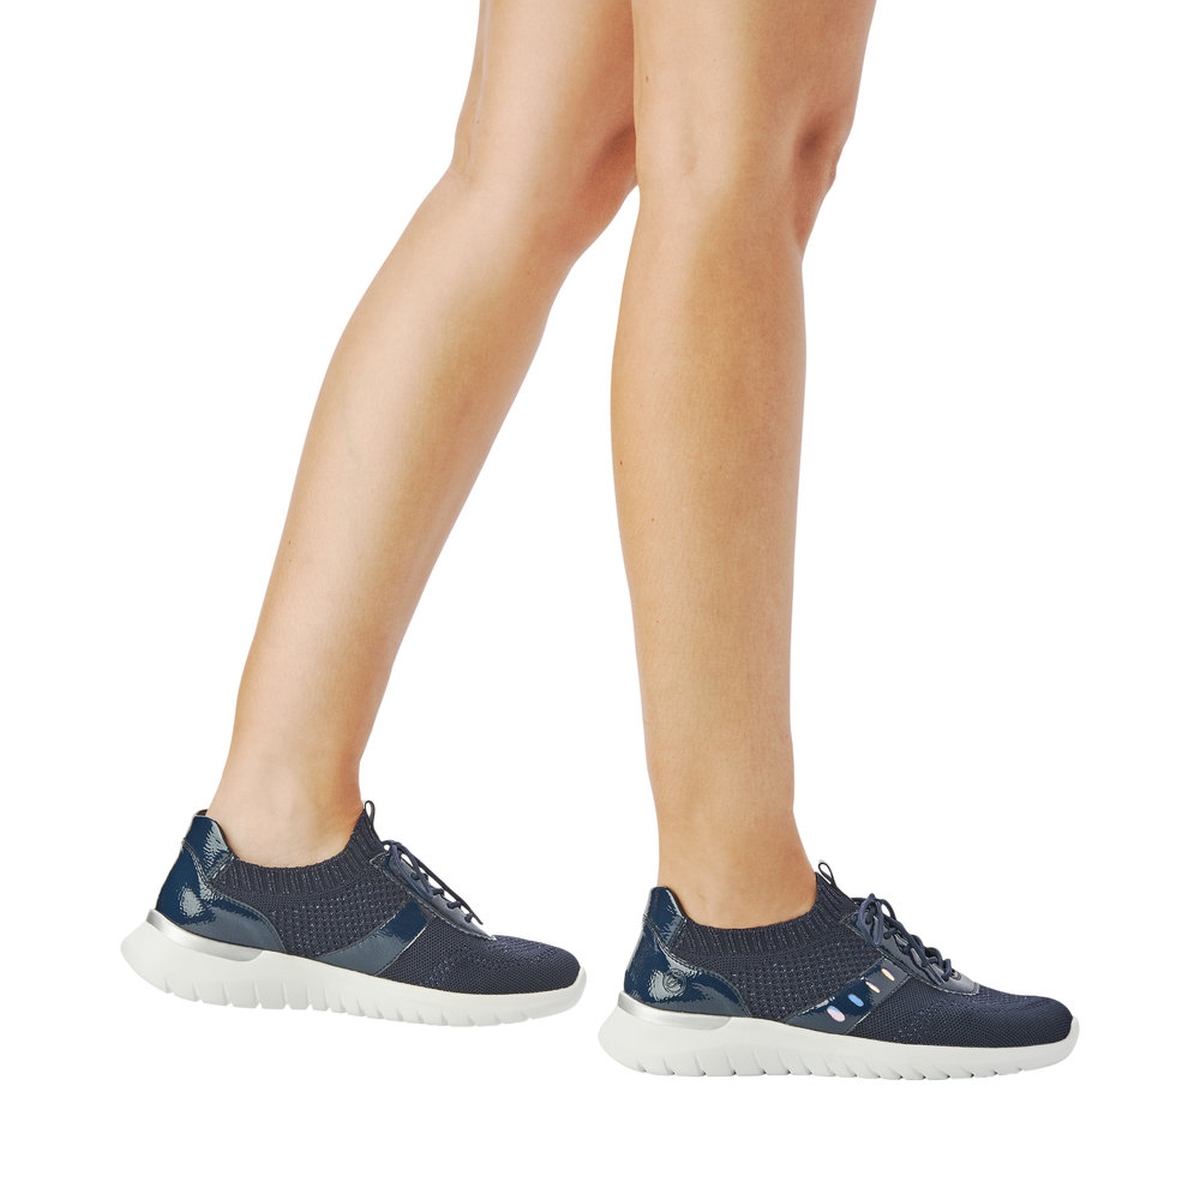 Remonte Sneaker - Dark blue Textile